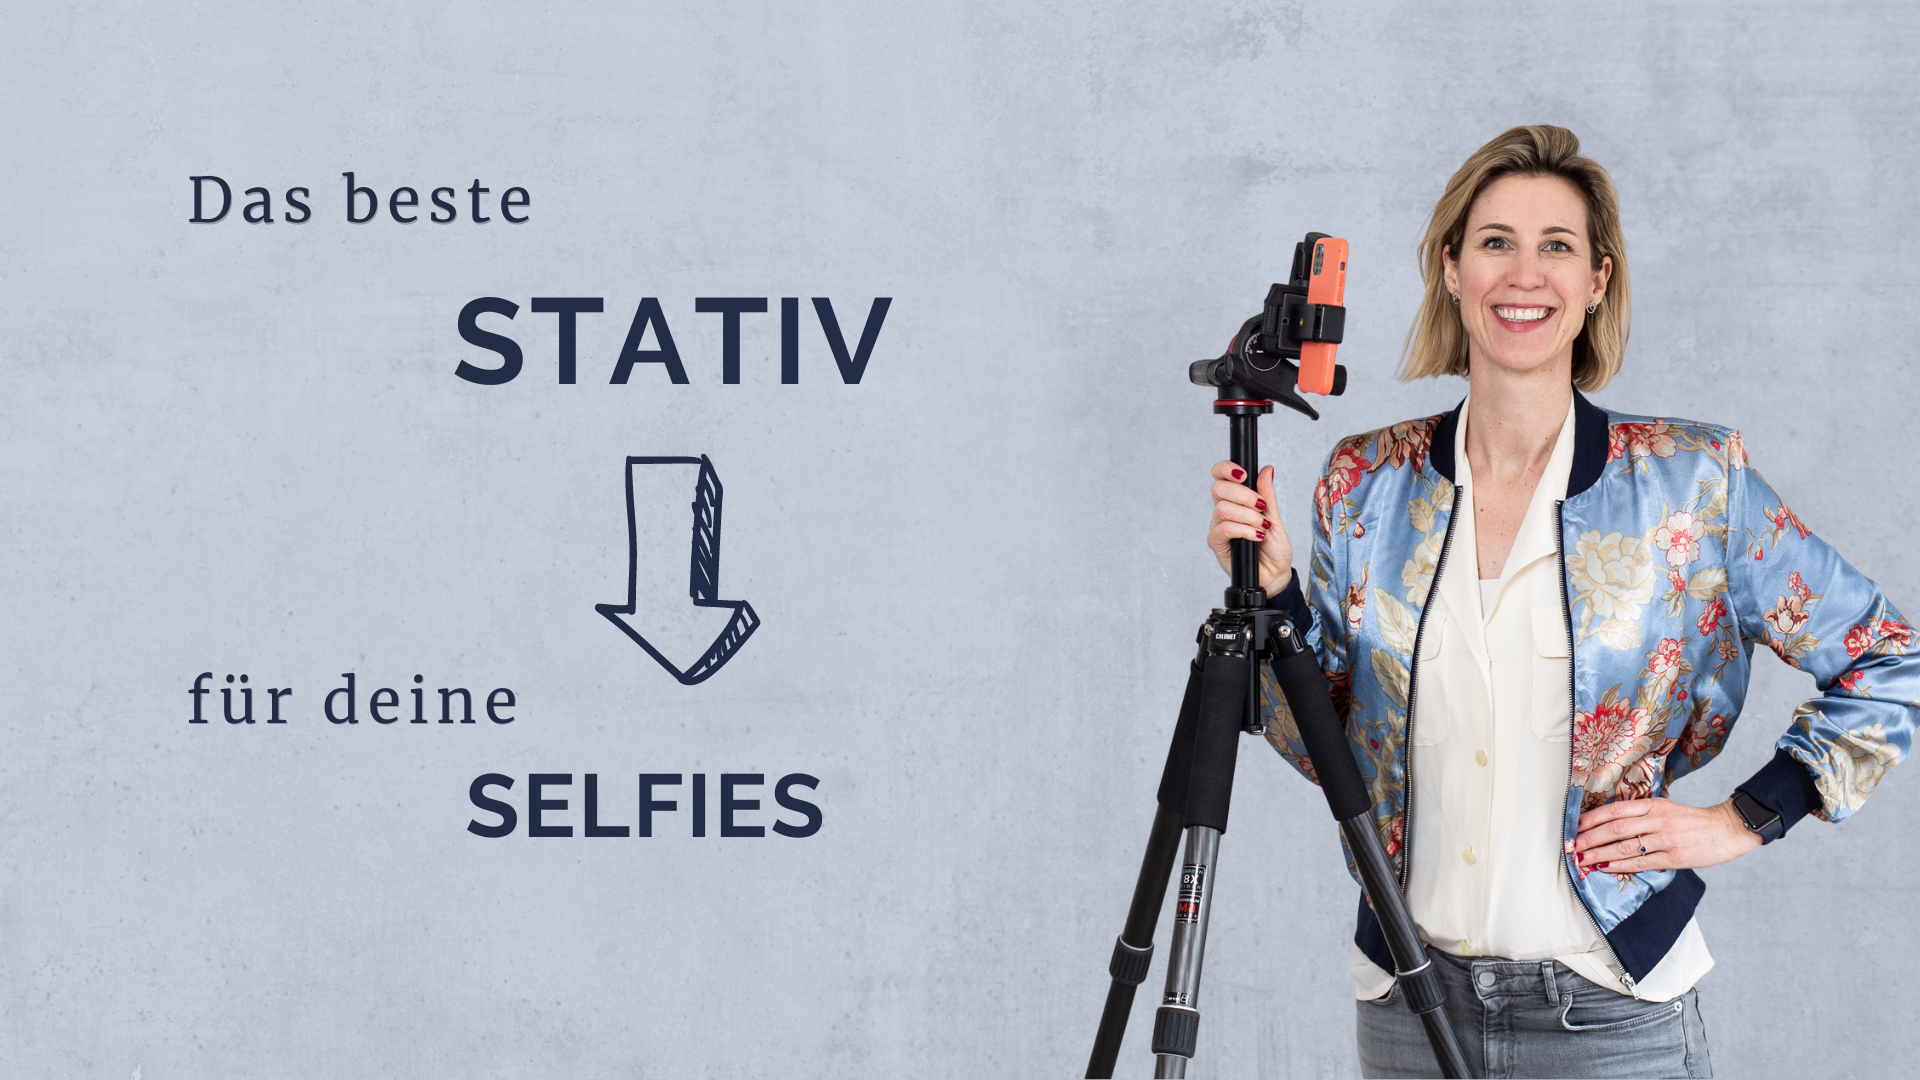 Die Überschrift: Das beste Stativ für deine Selfies steht geschrieben. Daneben ist ein Freisteller von Maxi zu sehen. Sie Maxi neben ihrem Stativ und lacht in die Kamera.